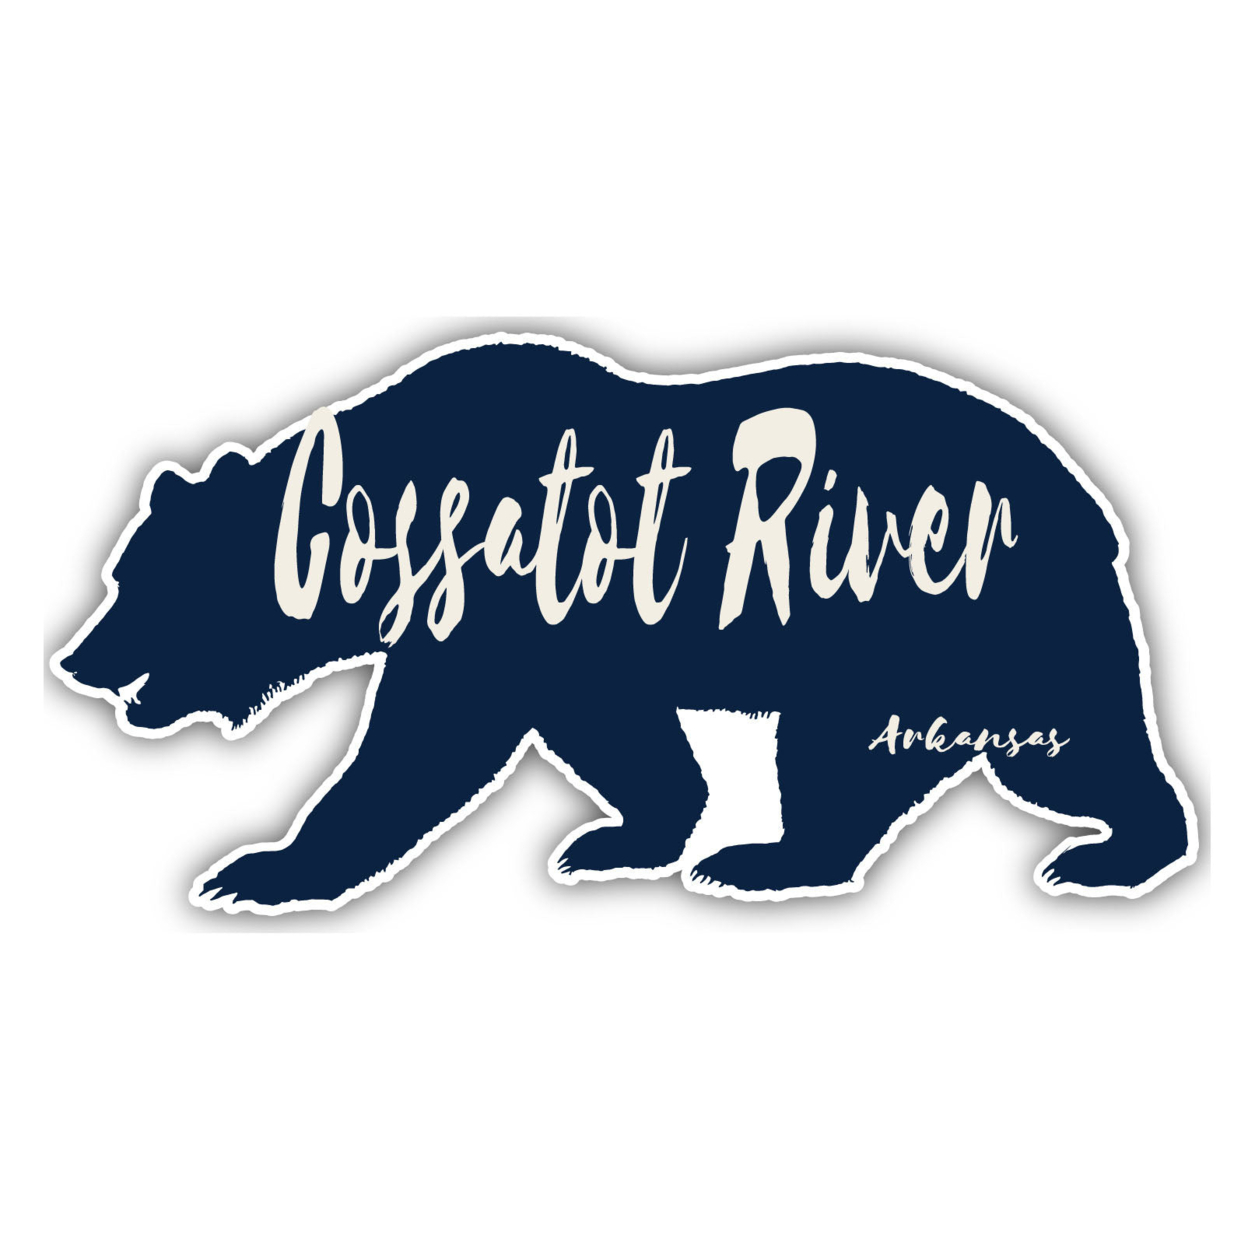 Cossatot River Arkansas Souvenir Decorative Stickers (Choose Theme And Size) - Single Unit, 12-Inch, Bear